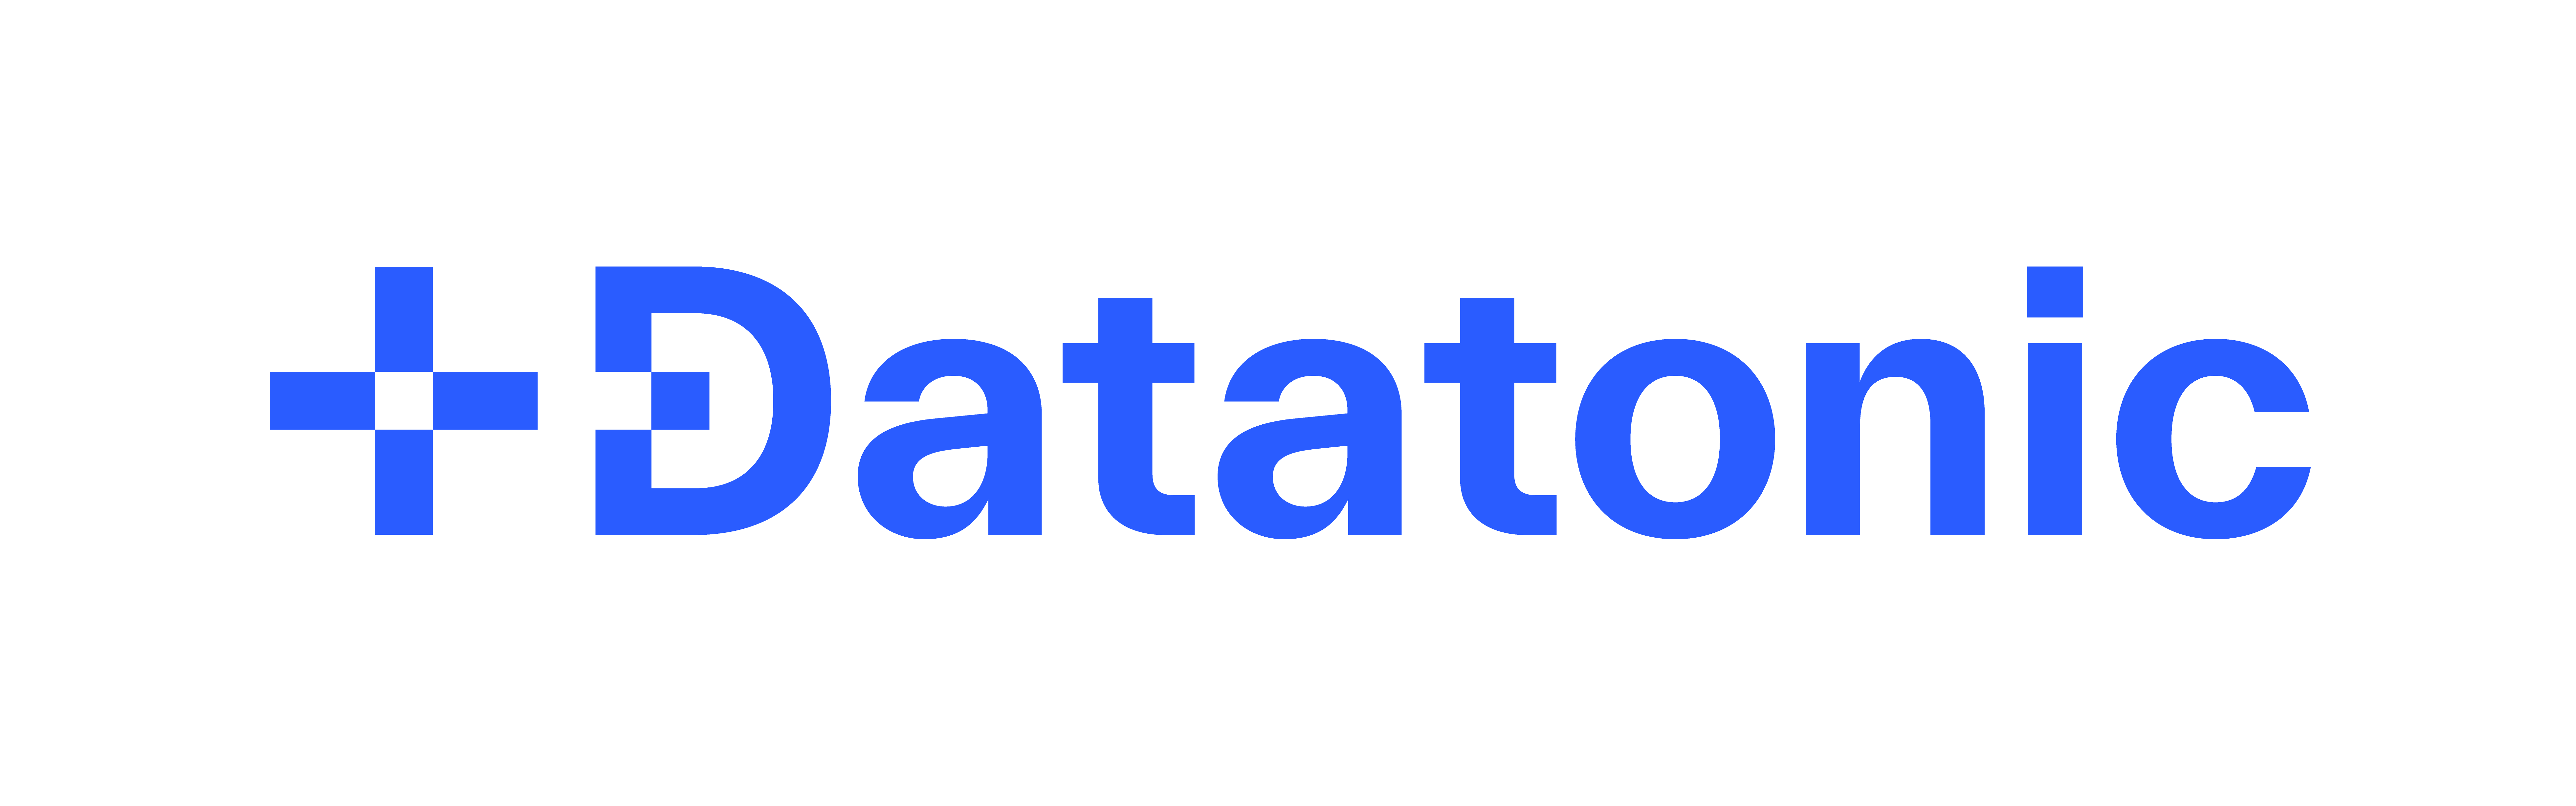 Datatonic 로고